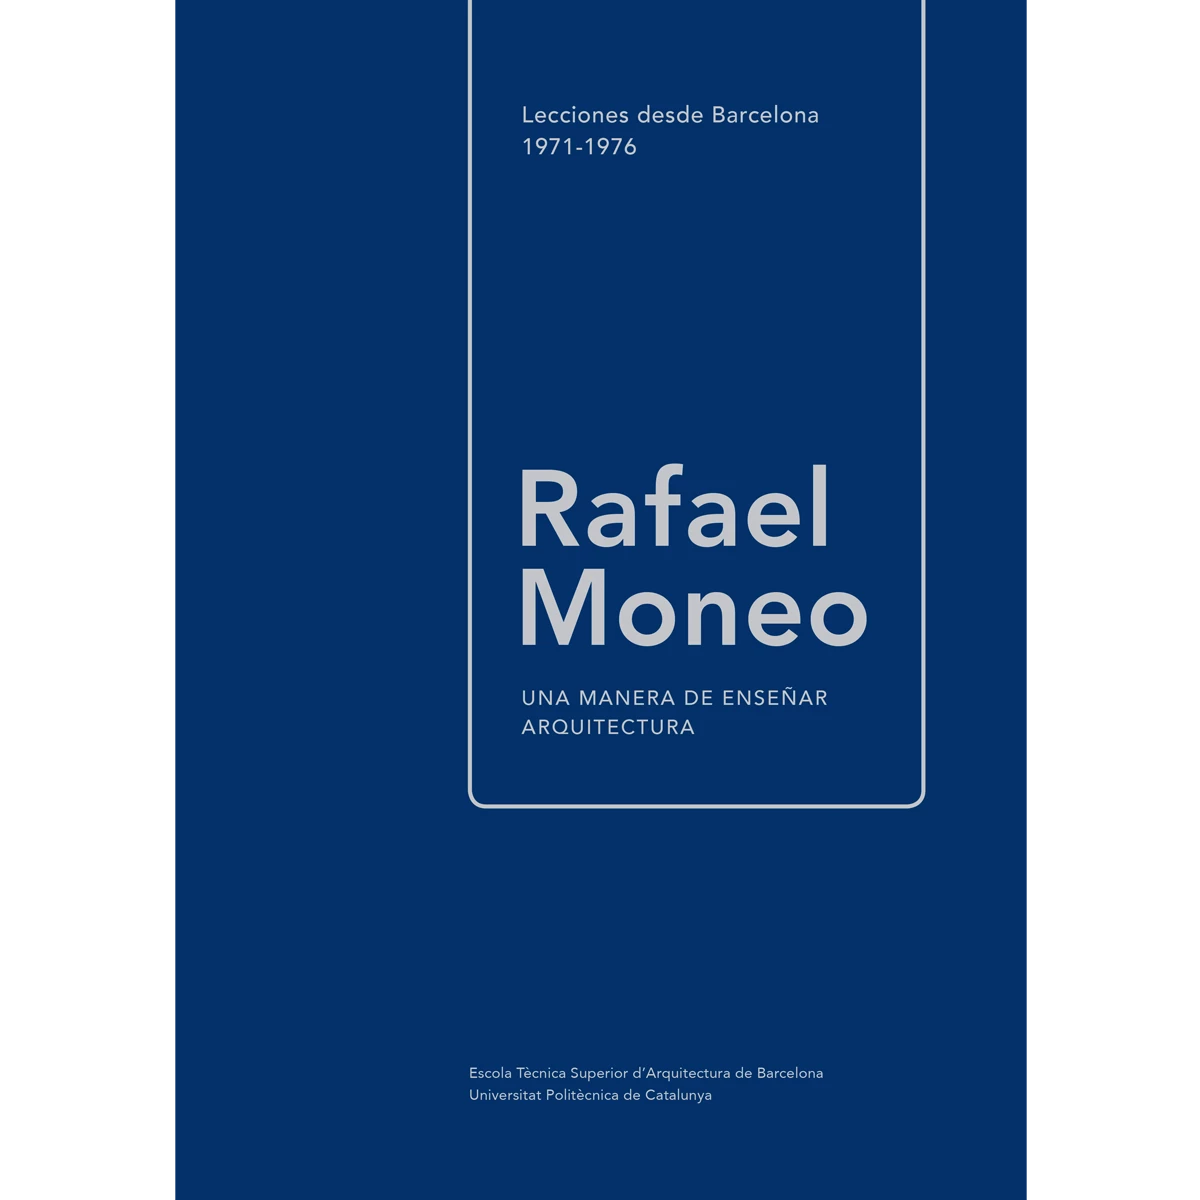 Rafael Moneo: una manera de enseñar arquitectura